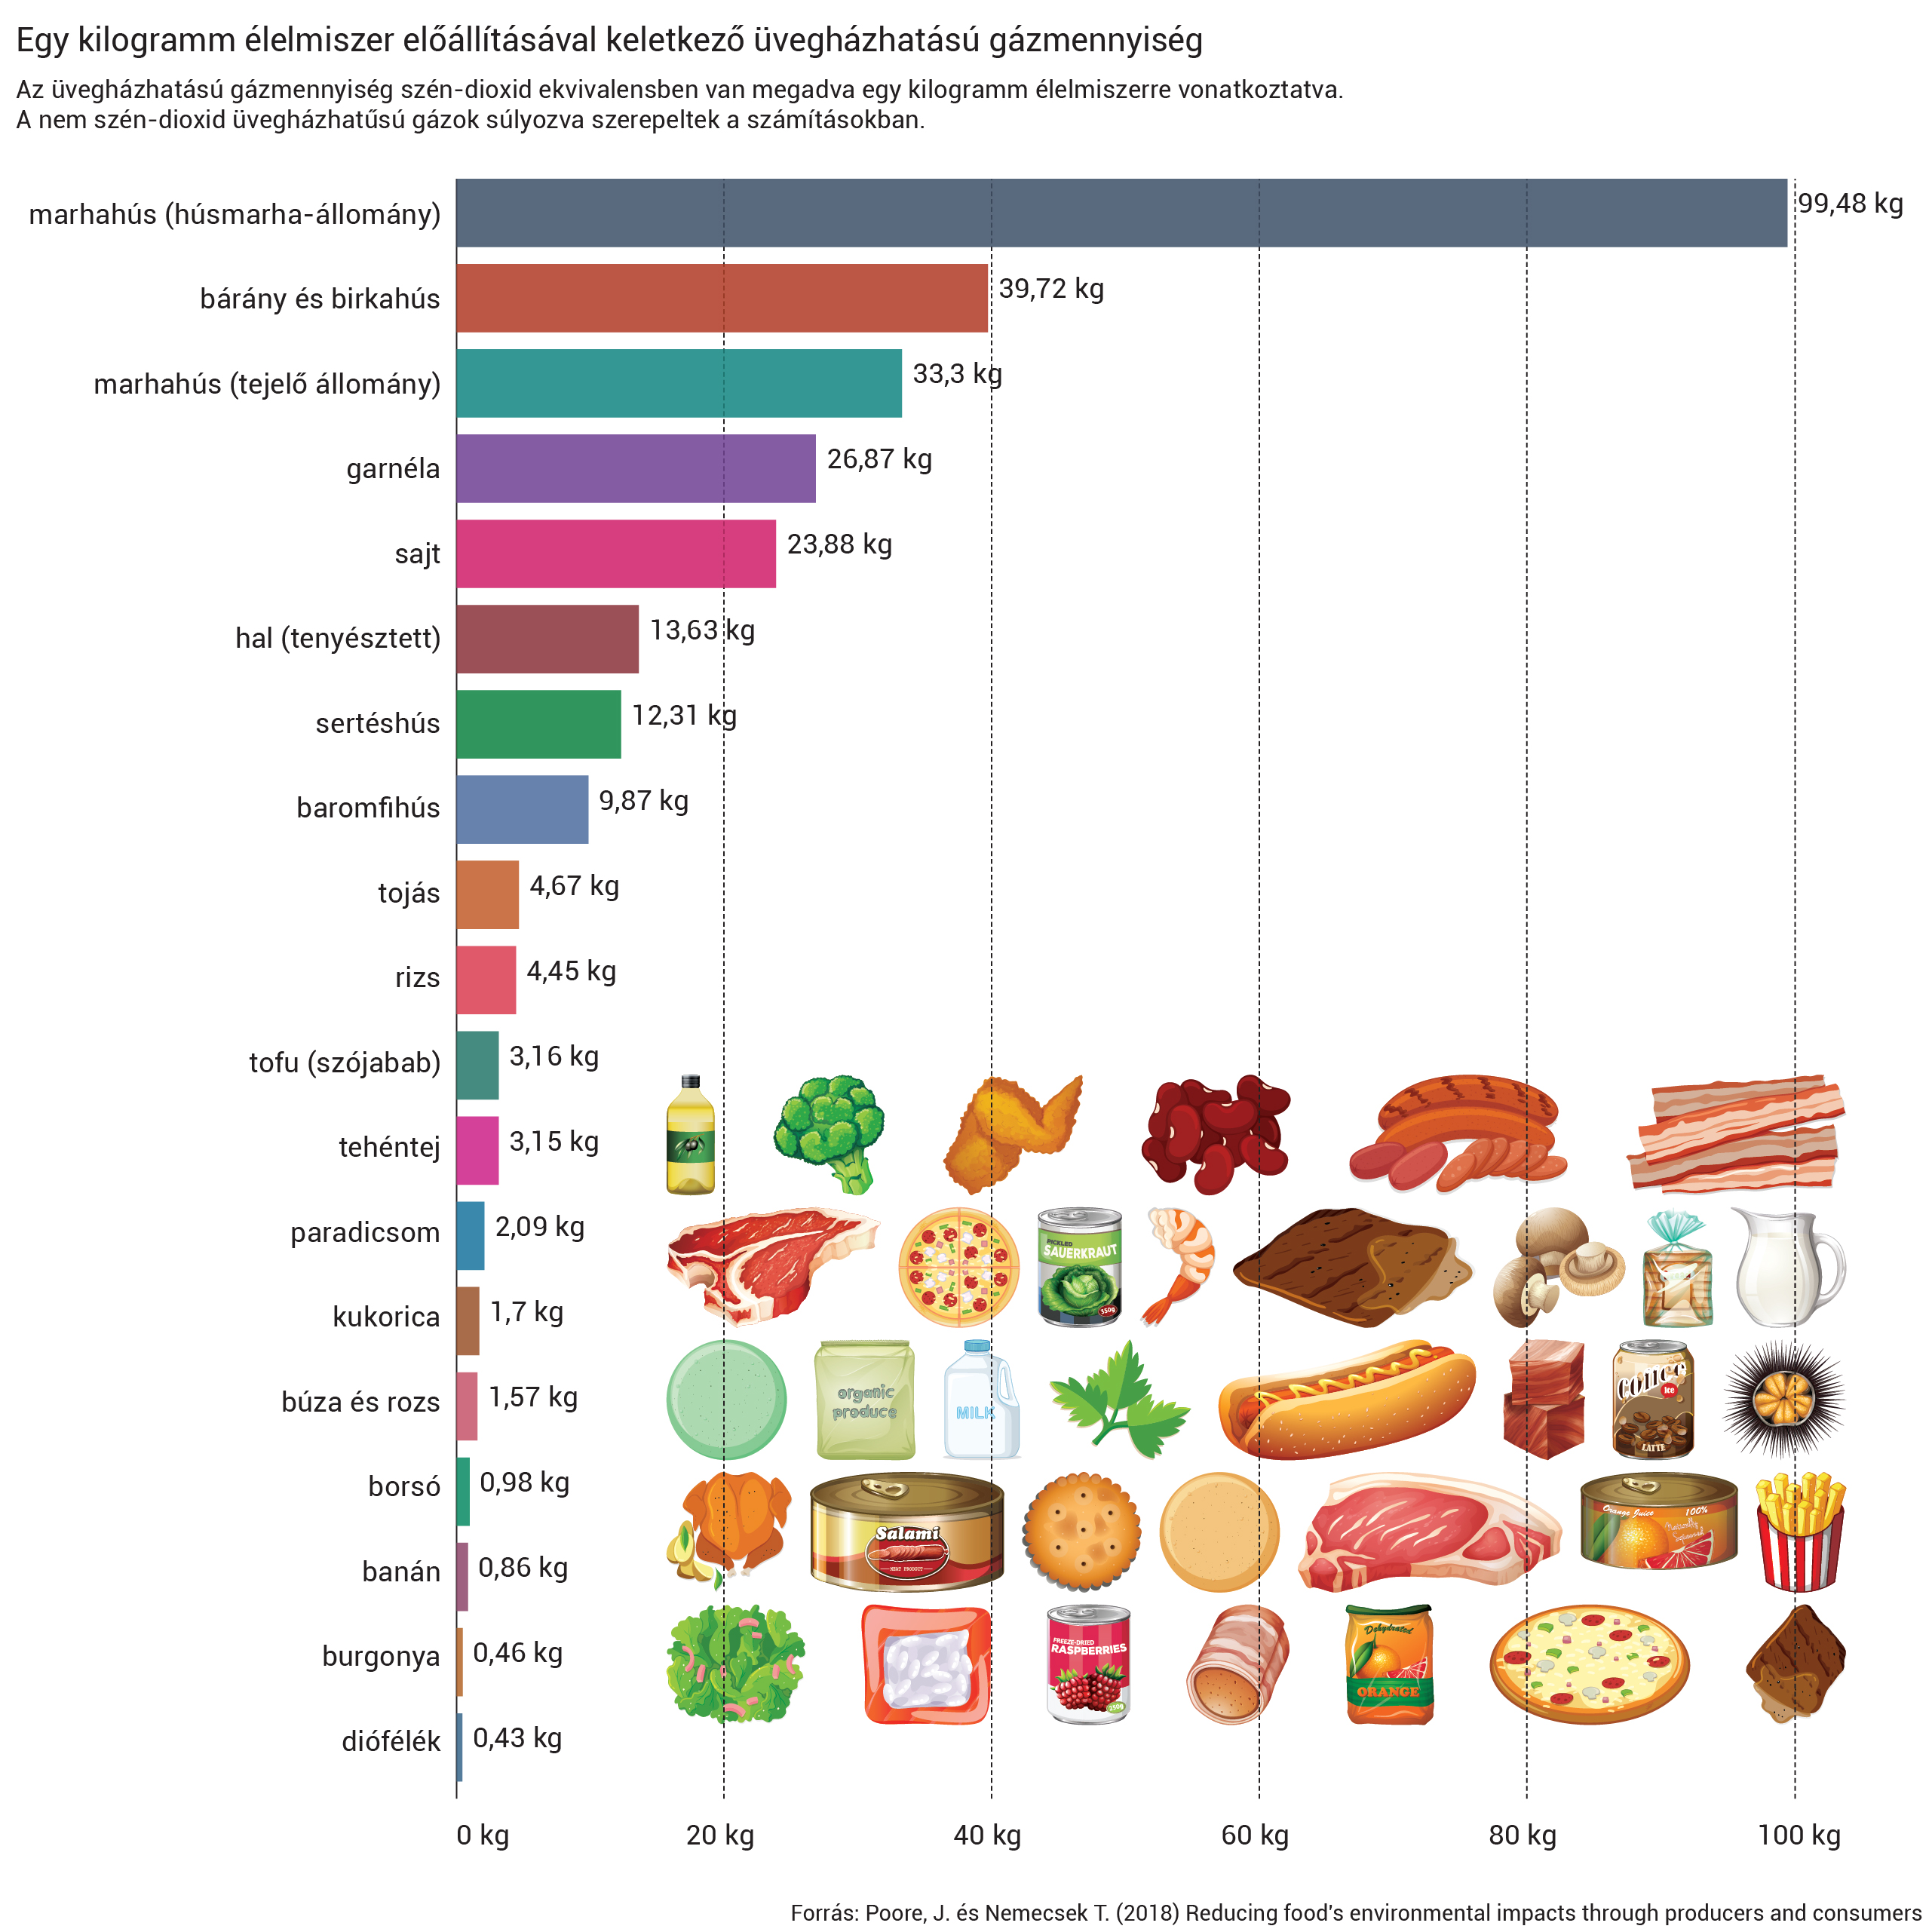 Egy kilogramm élelmiszer előállítása a húsfélék esetében jár a legnagyobb karbonkibocsátással